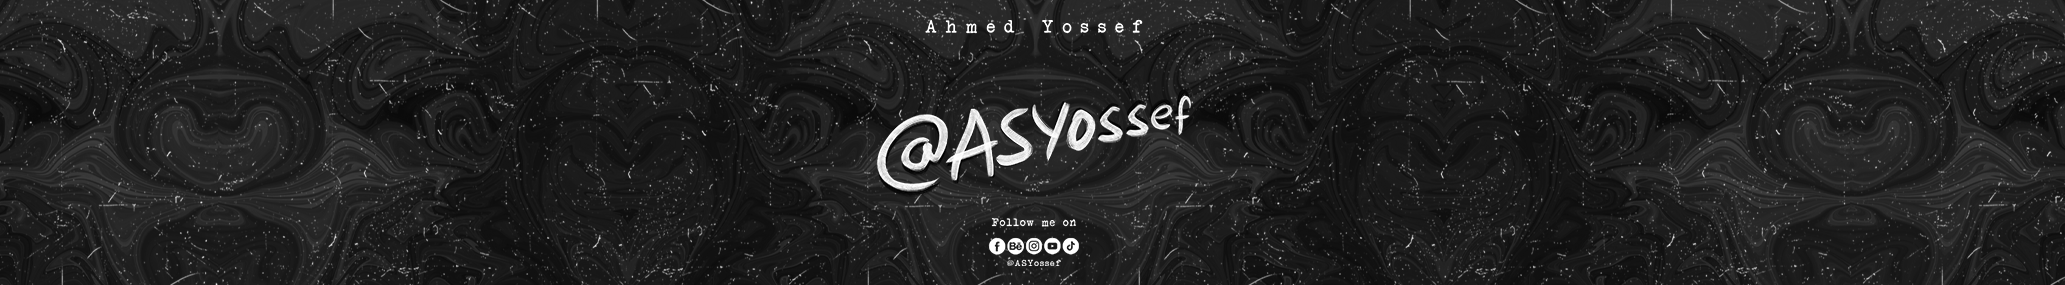 Profil-Banner von Ahmed S. Yossef